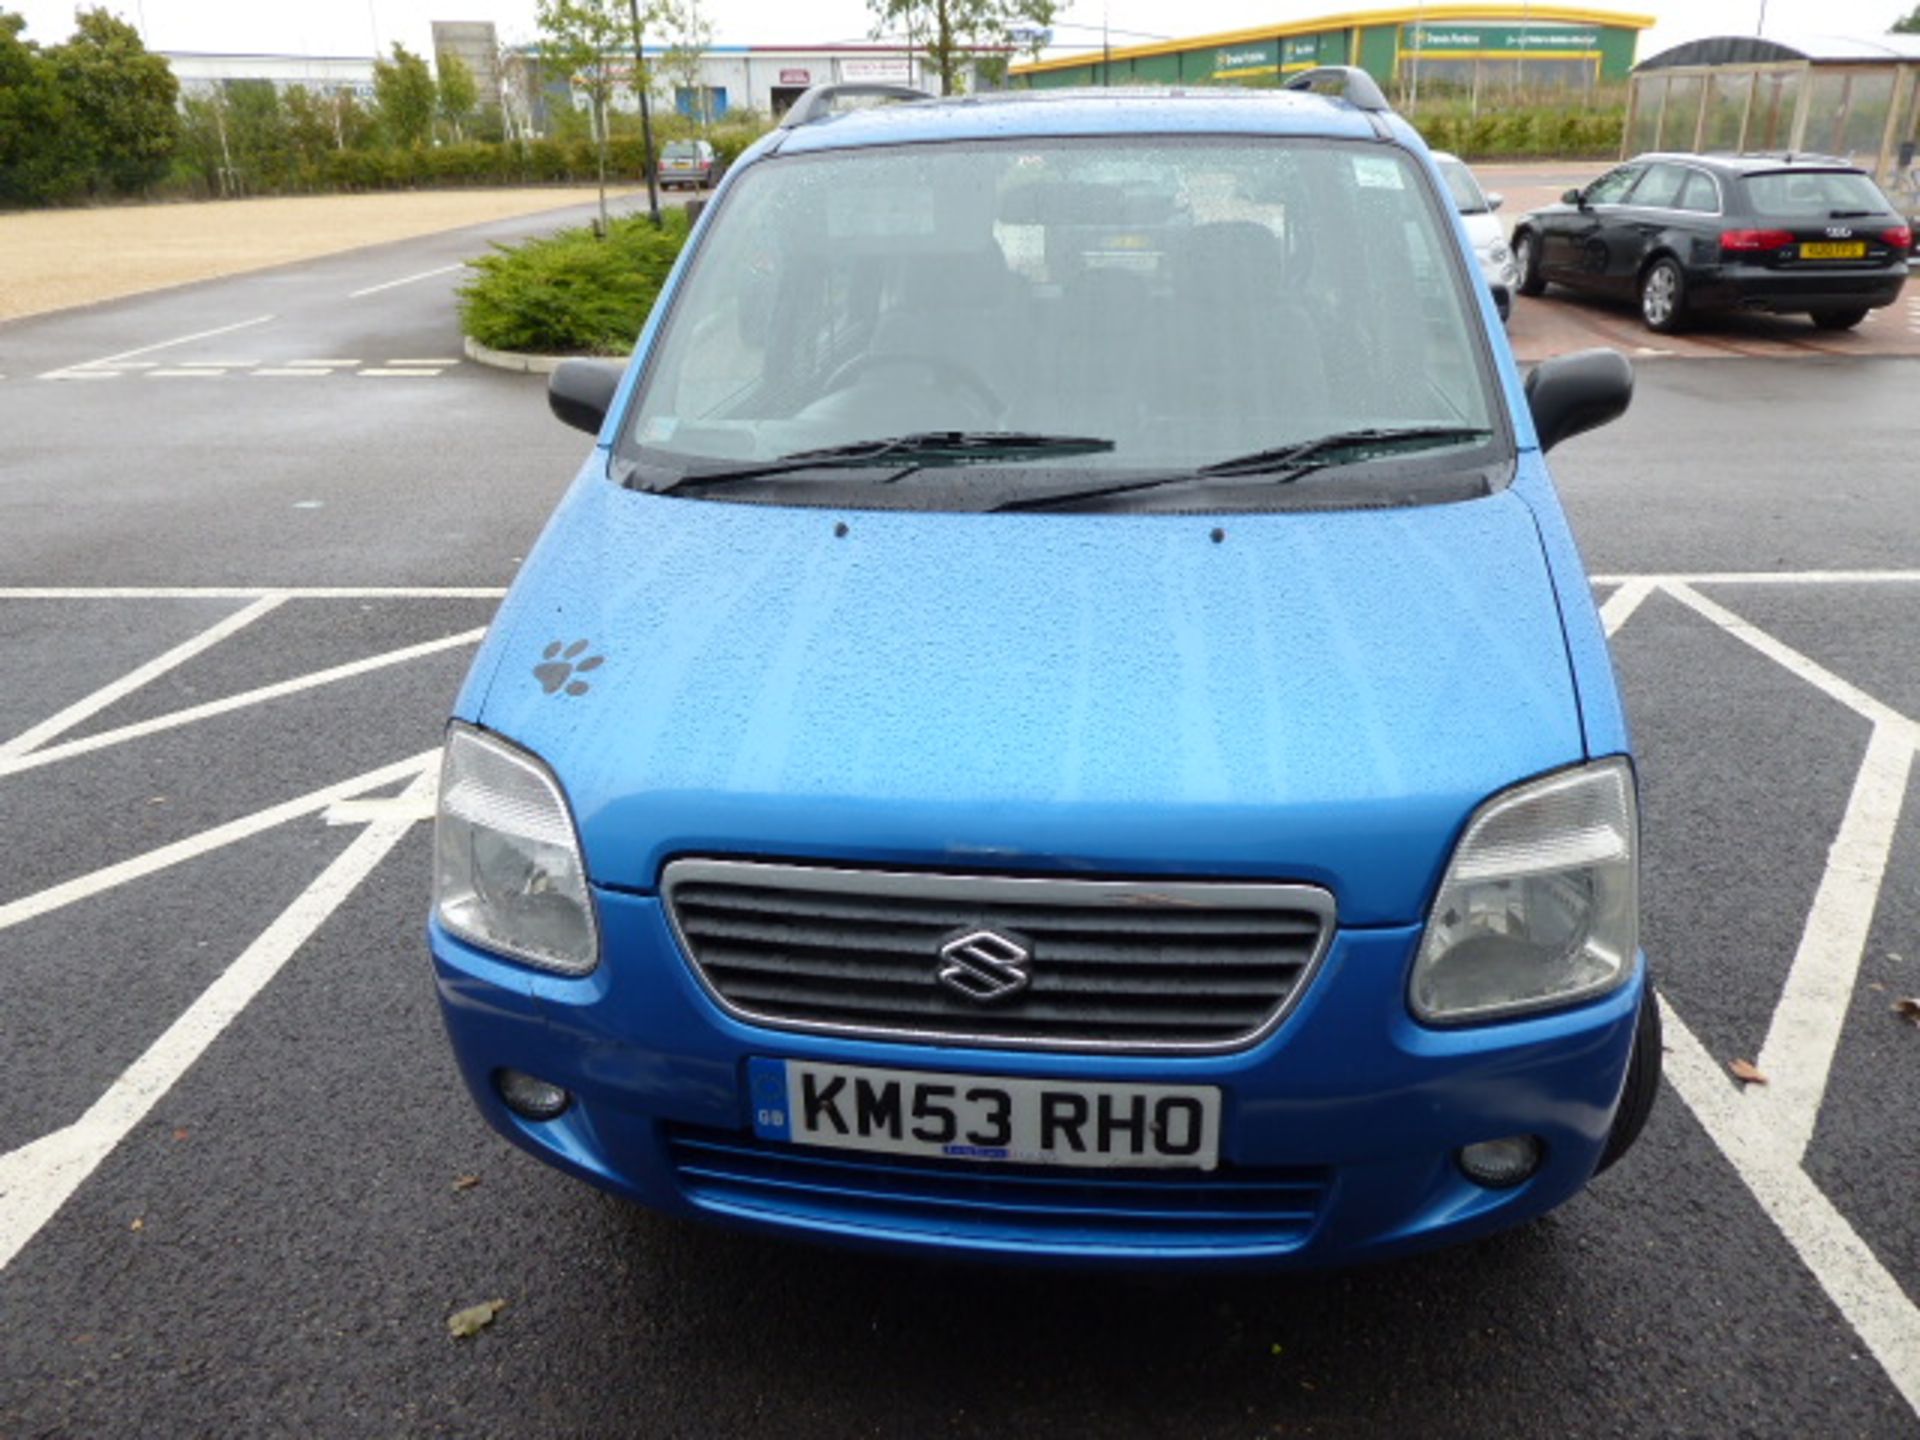 KM53 RHQ (2003) Suzuki Wagon R, petrol in blue MOT: 13/1/2021